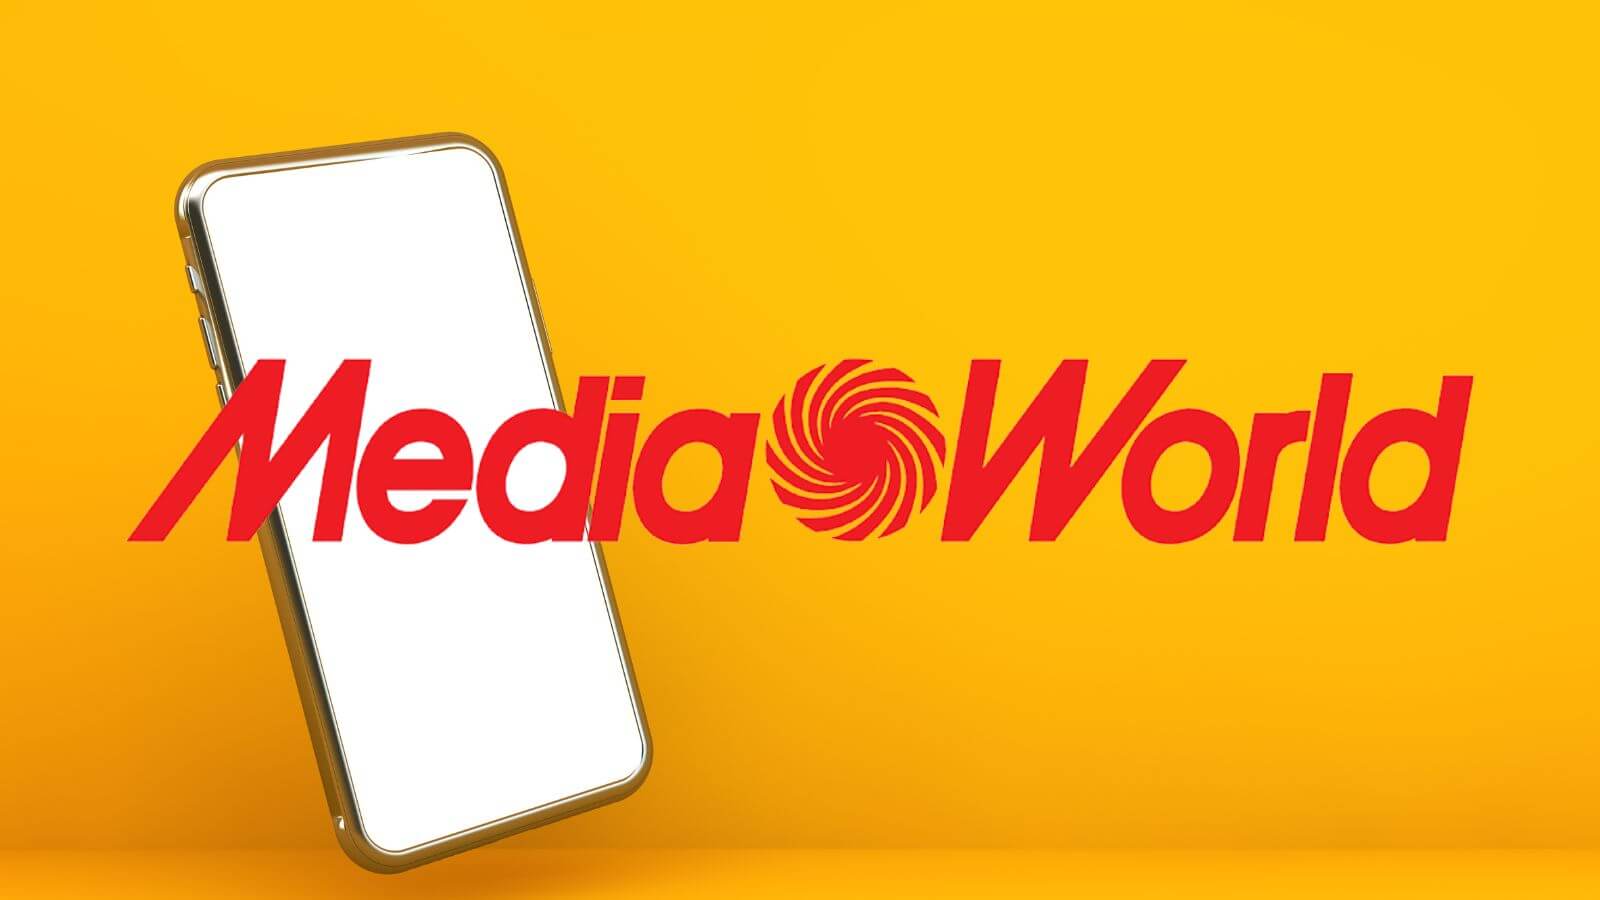 MediaWorld impazzisce con SCONTI al 75% e gli smartphone in REGALO